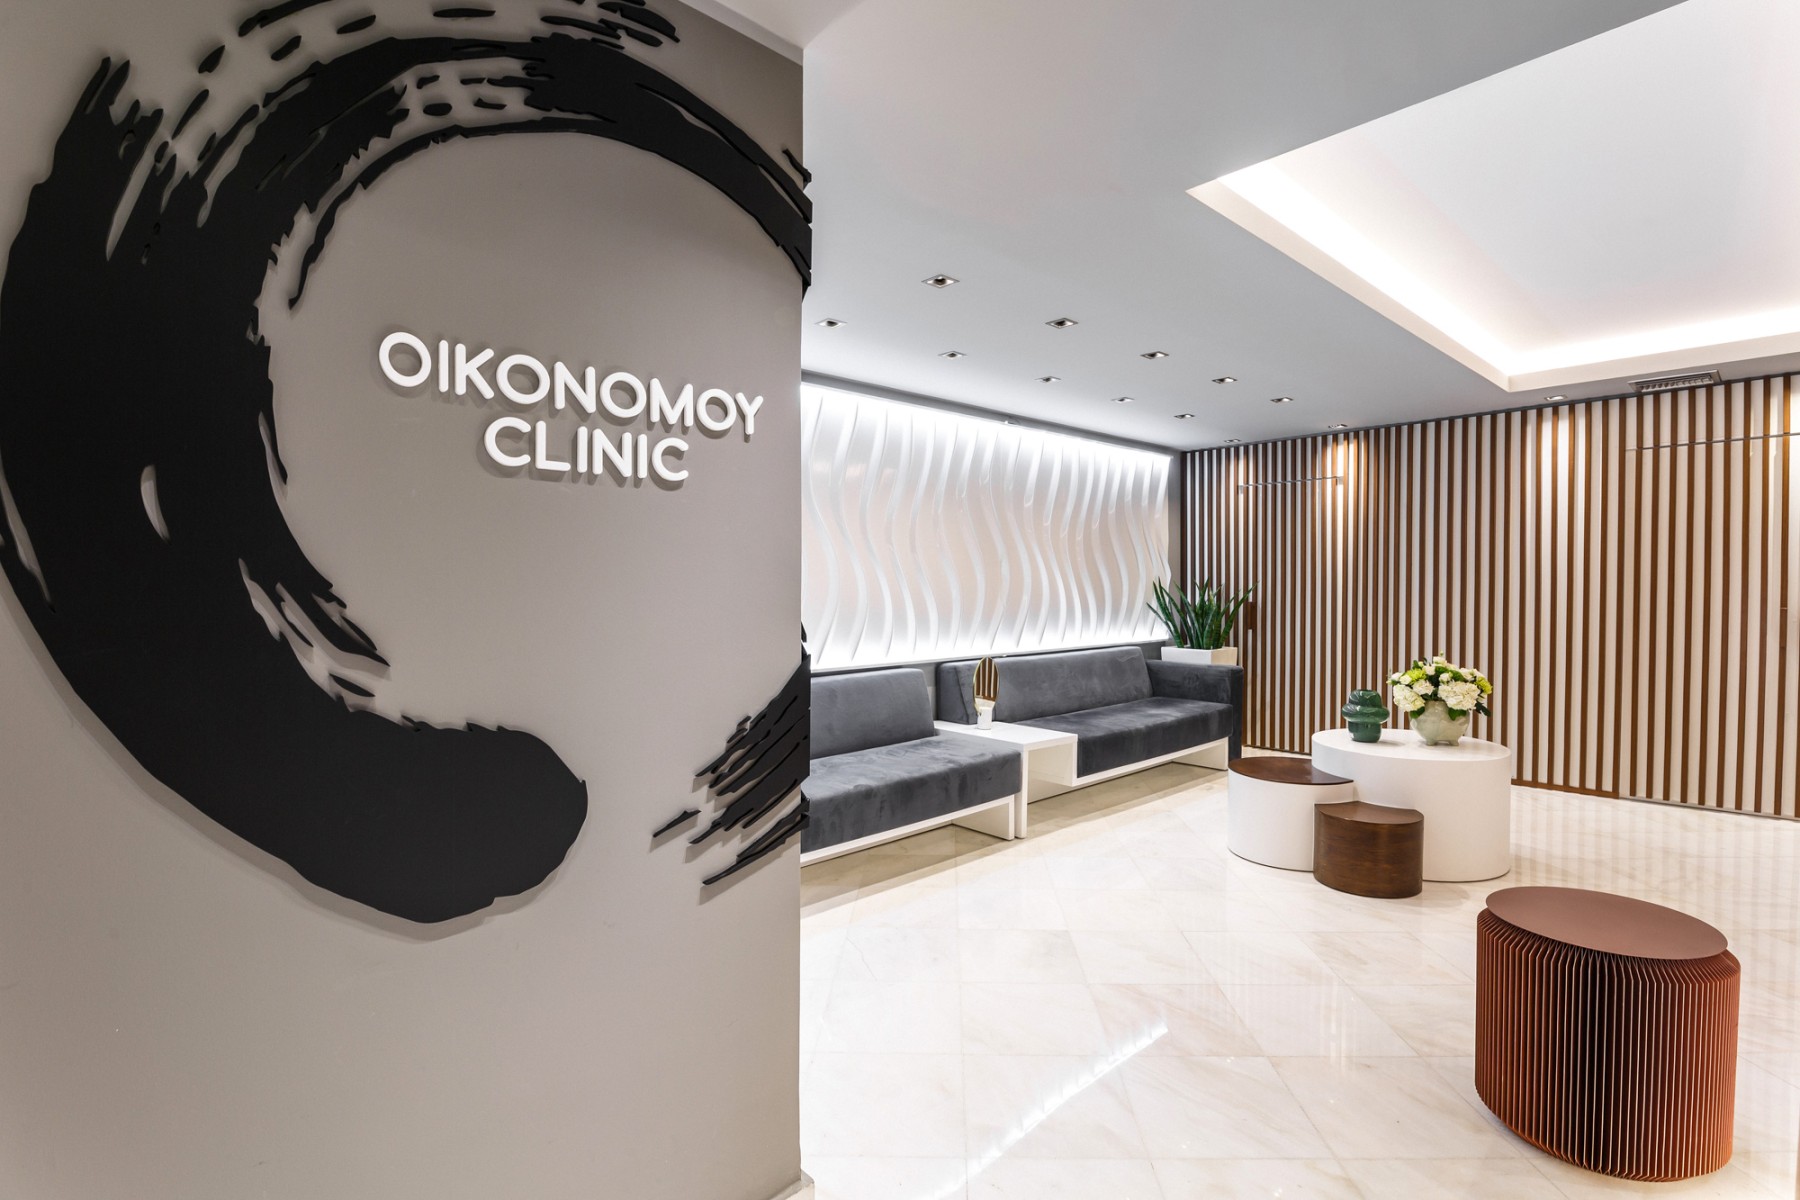 Φωτογράφιση Ιατρείου και Ιατρών | Oikonomou Clinic Θεσσαλονίκη